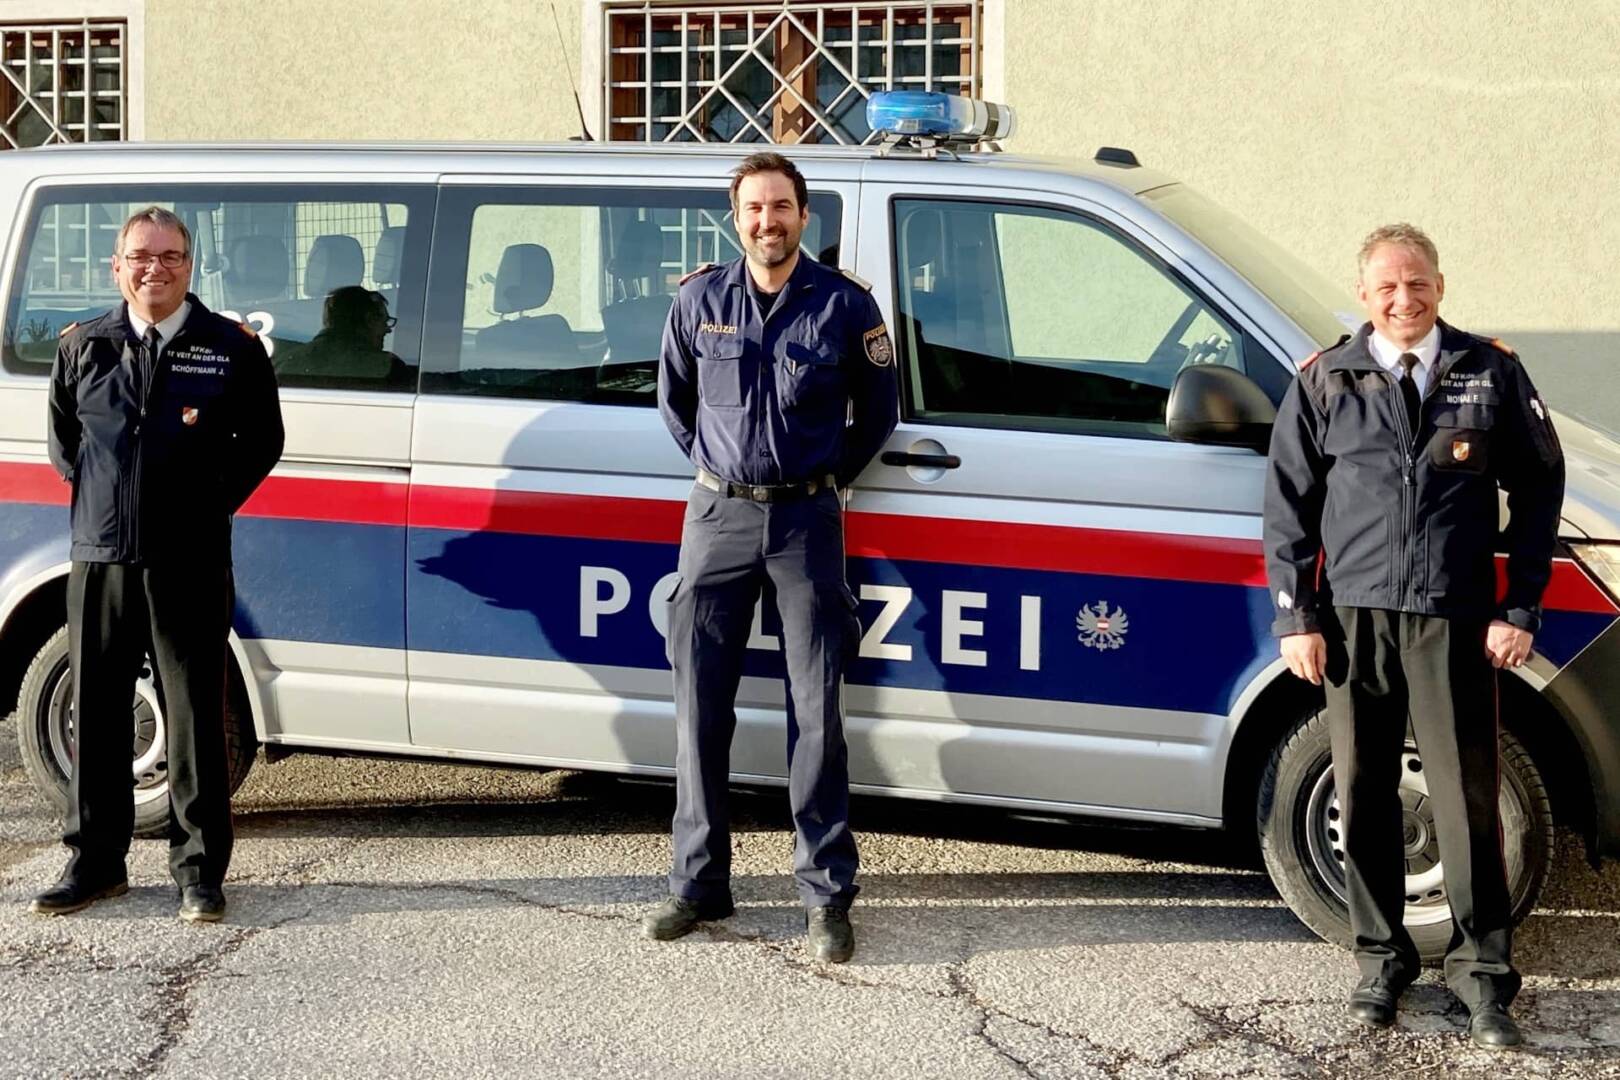 Antrittsbesuch beim jüngsten Polizeikommandanten Kärntens